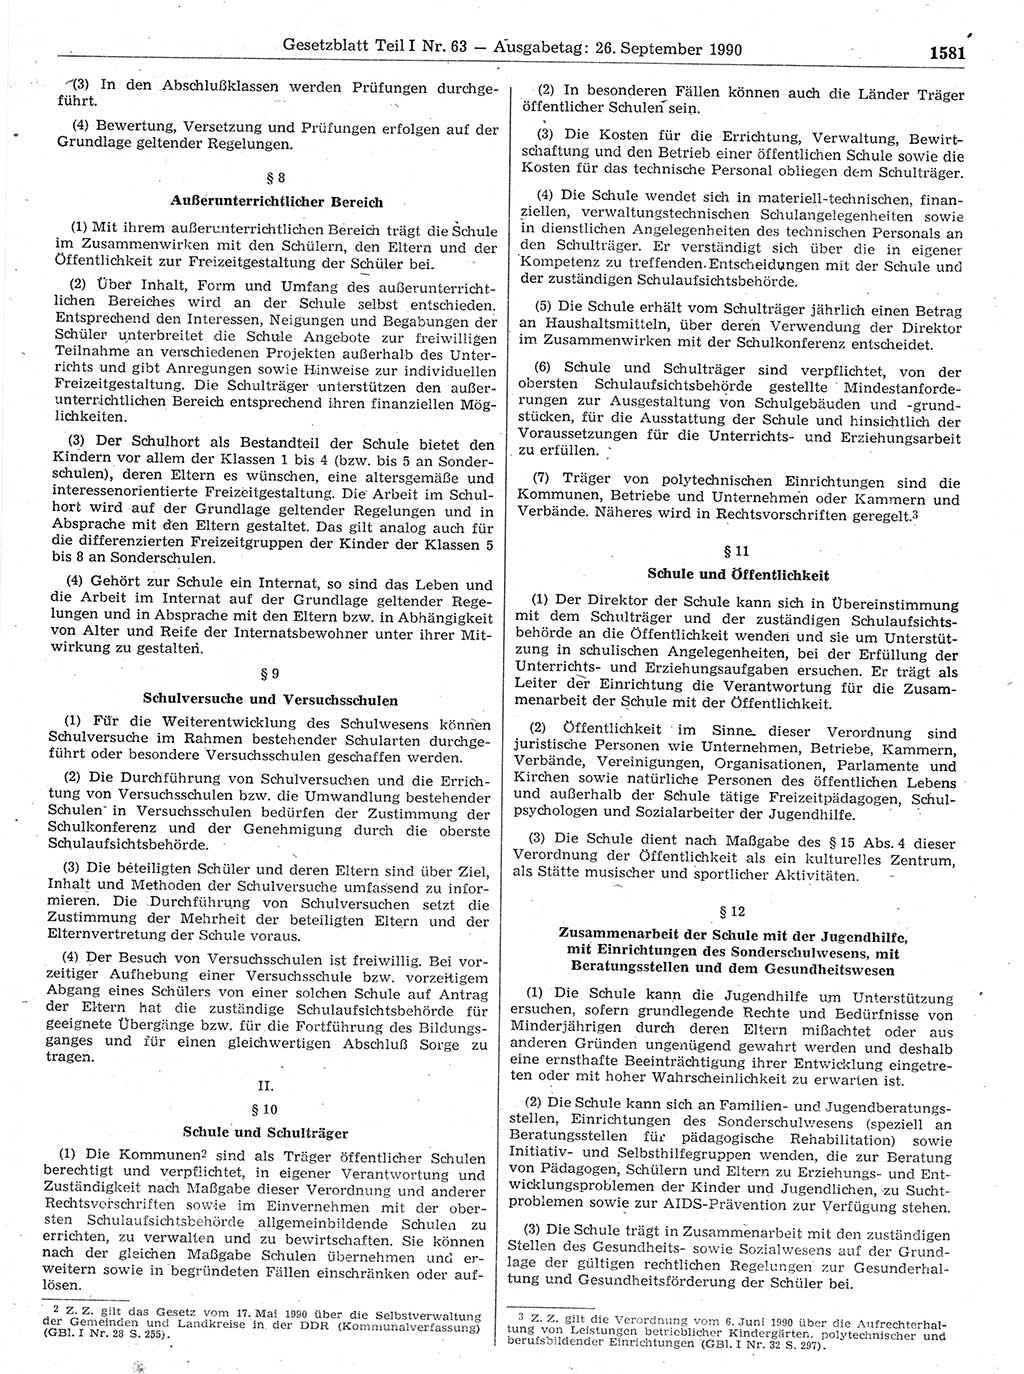 Gesetzblatt (GBl.) der Deutschen Demokratischen Republik (DDR) Teil Ⅰ 1990, Seite 1581 (GBl. DDR Ⅰ 1990, S. 1581)